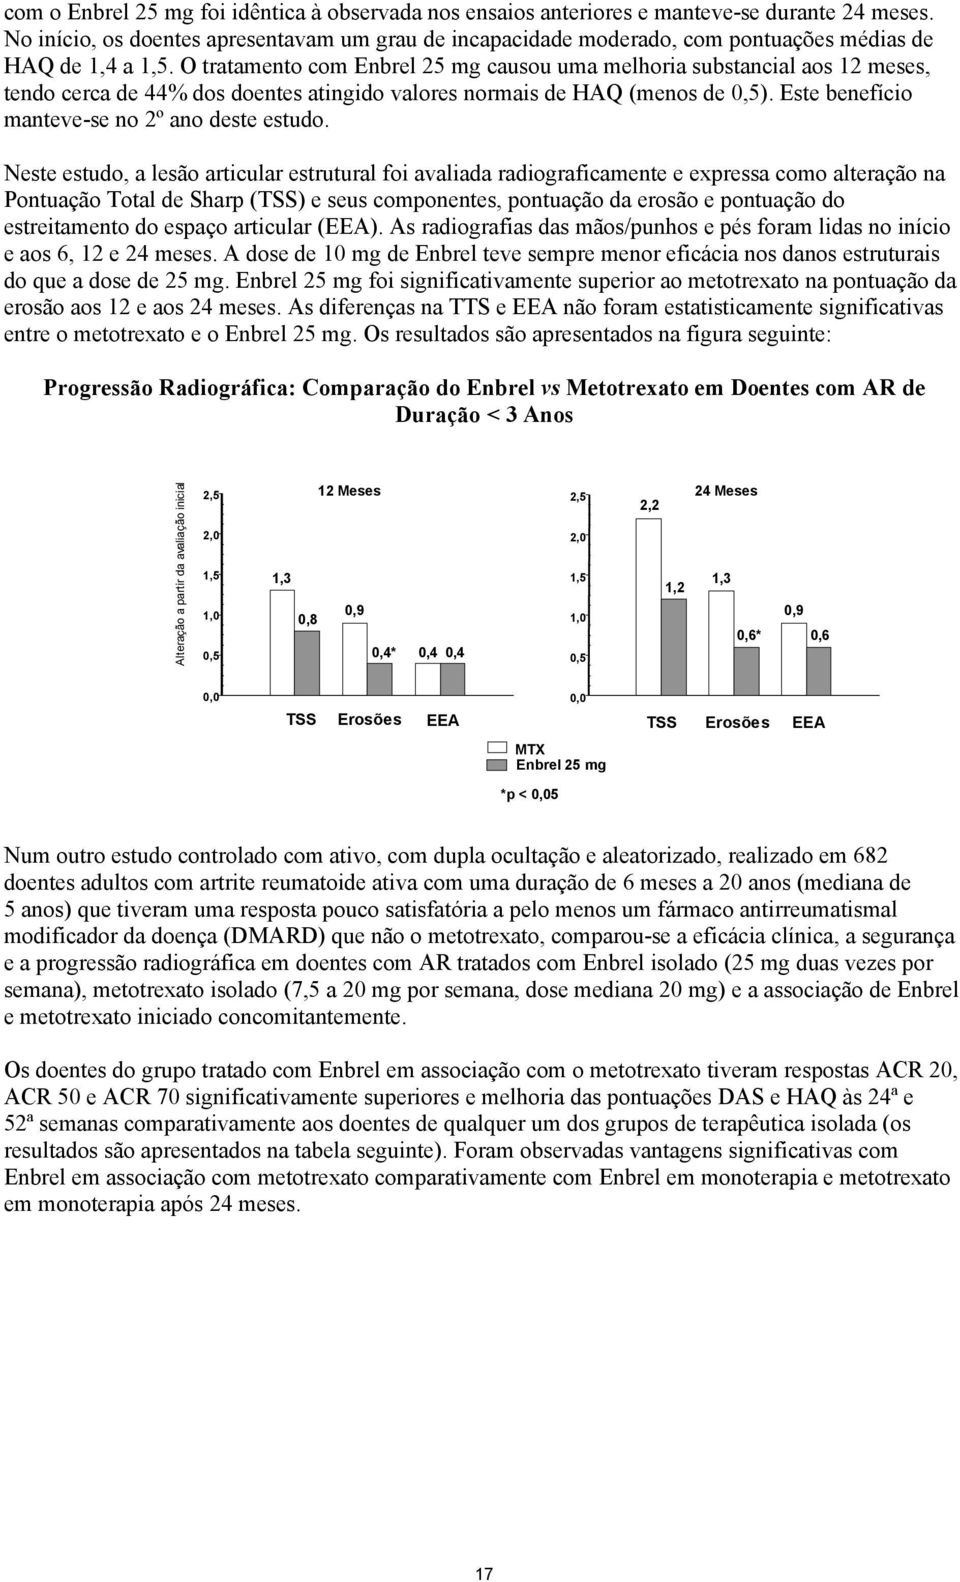 O tratamento com Enbrel 25 mg causou uma melhoria substancial aos 12 meses, tendo cerca de 44% dos doentes atingido valores normais de HAQ (menos de 0,5).